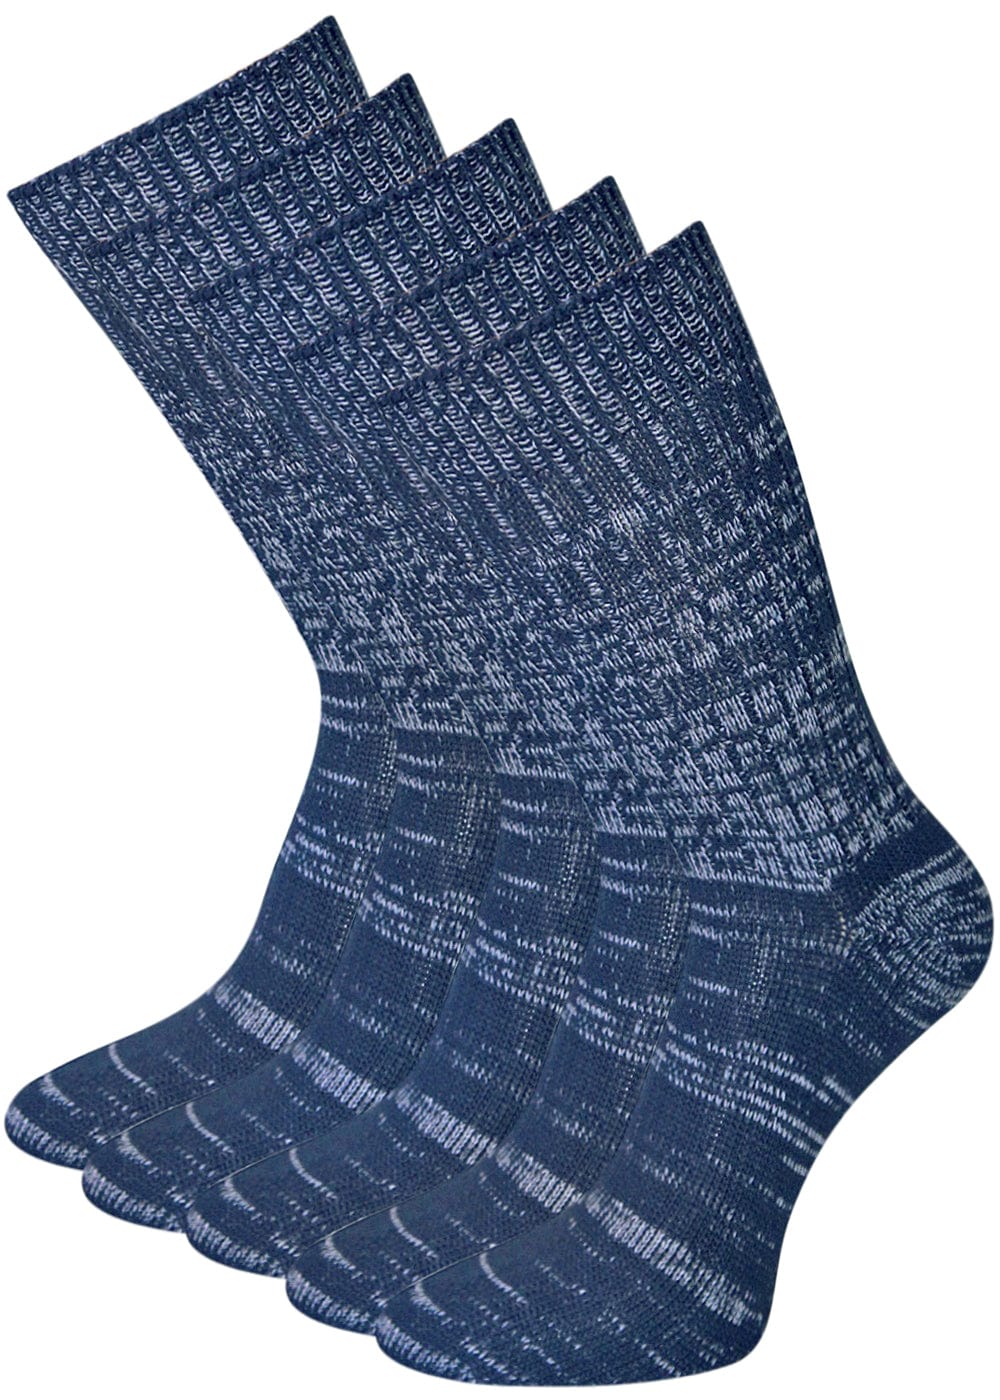 Jeanssocken Marinemeliert - 5 Paar – KB Socken